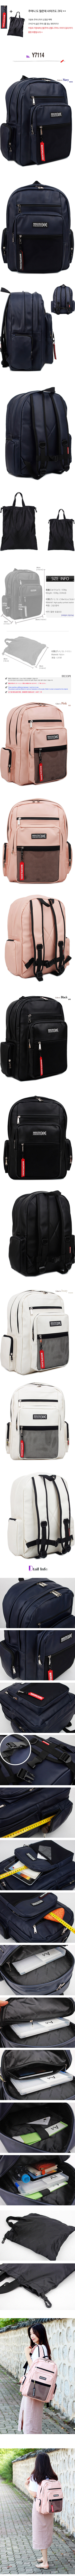 backpackY7114.jpg